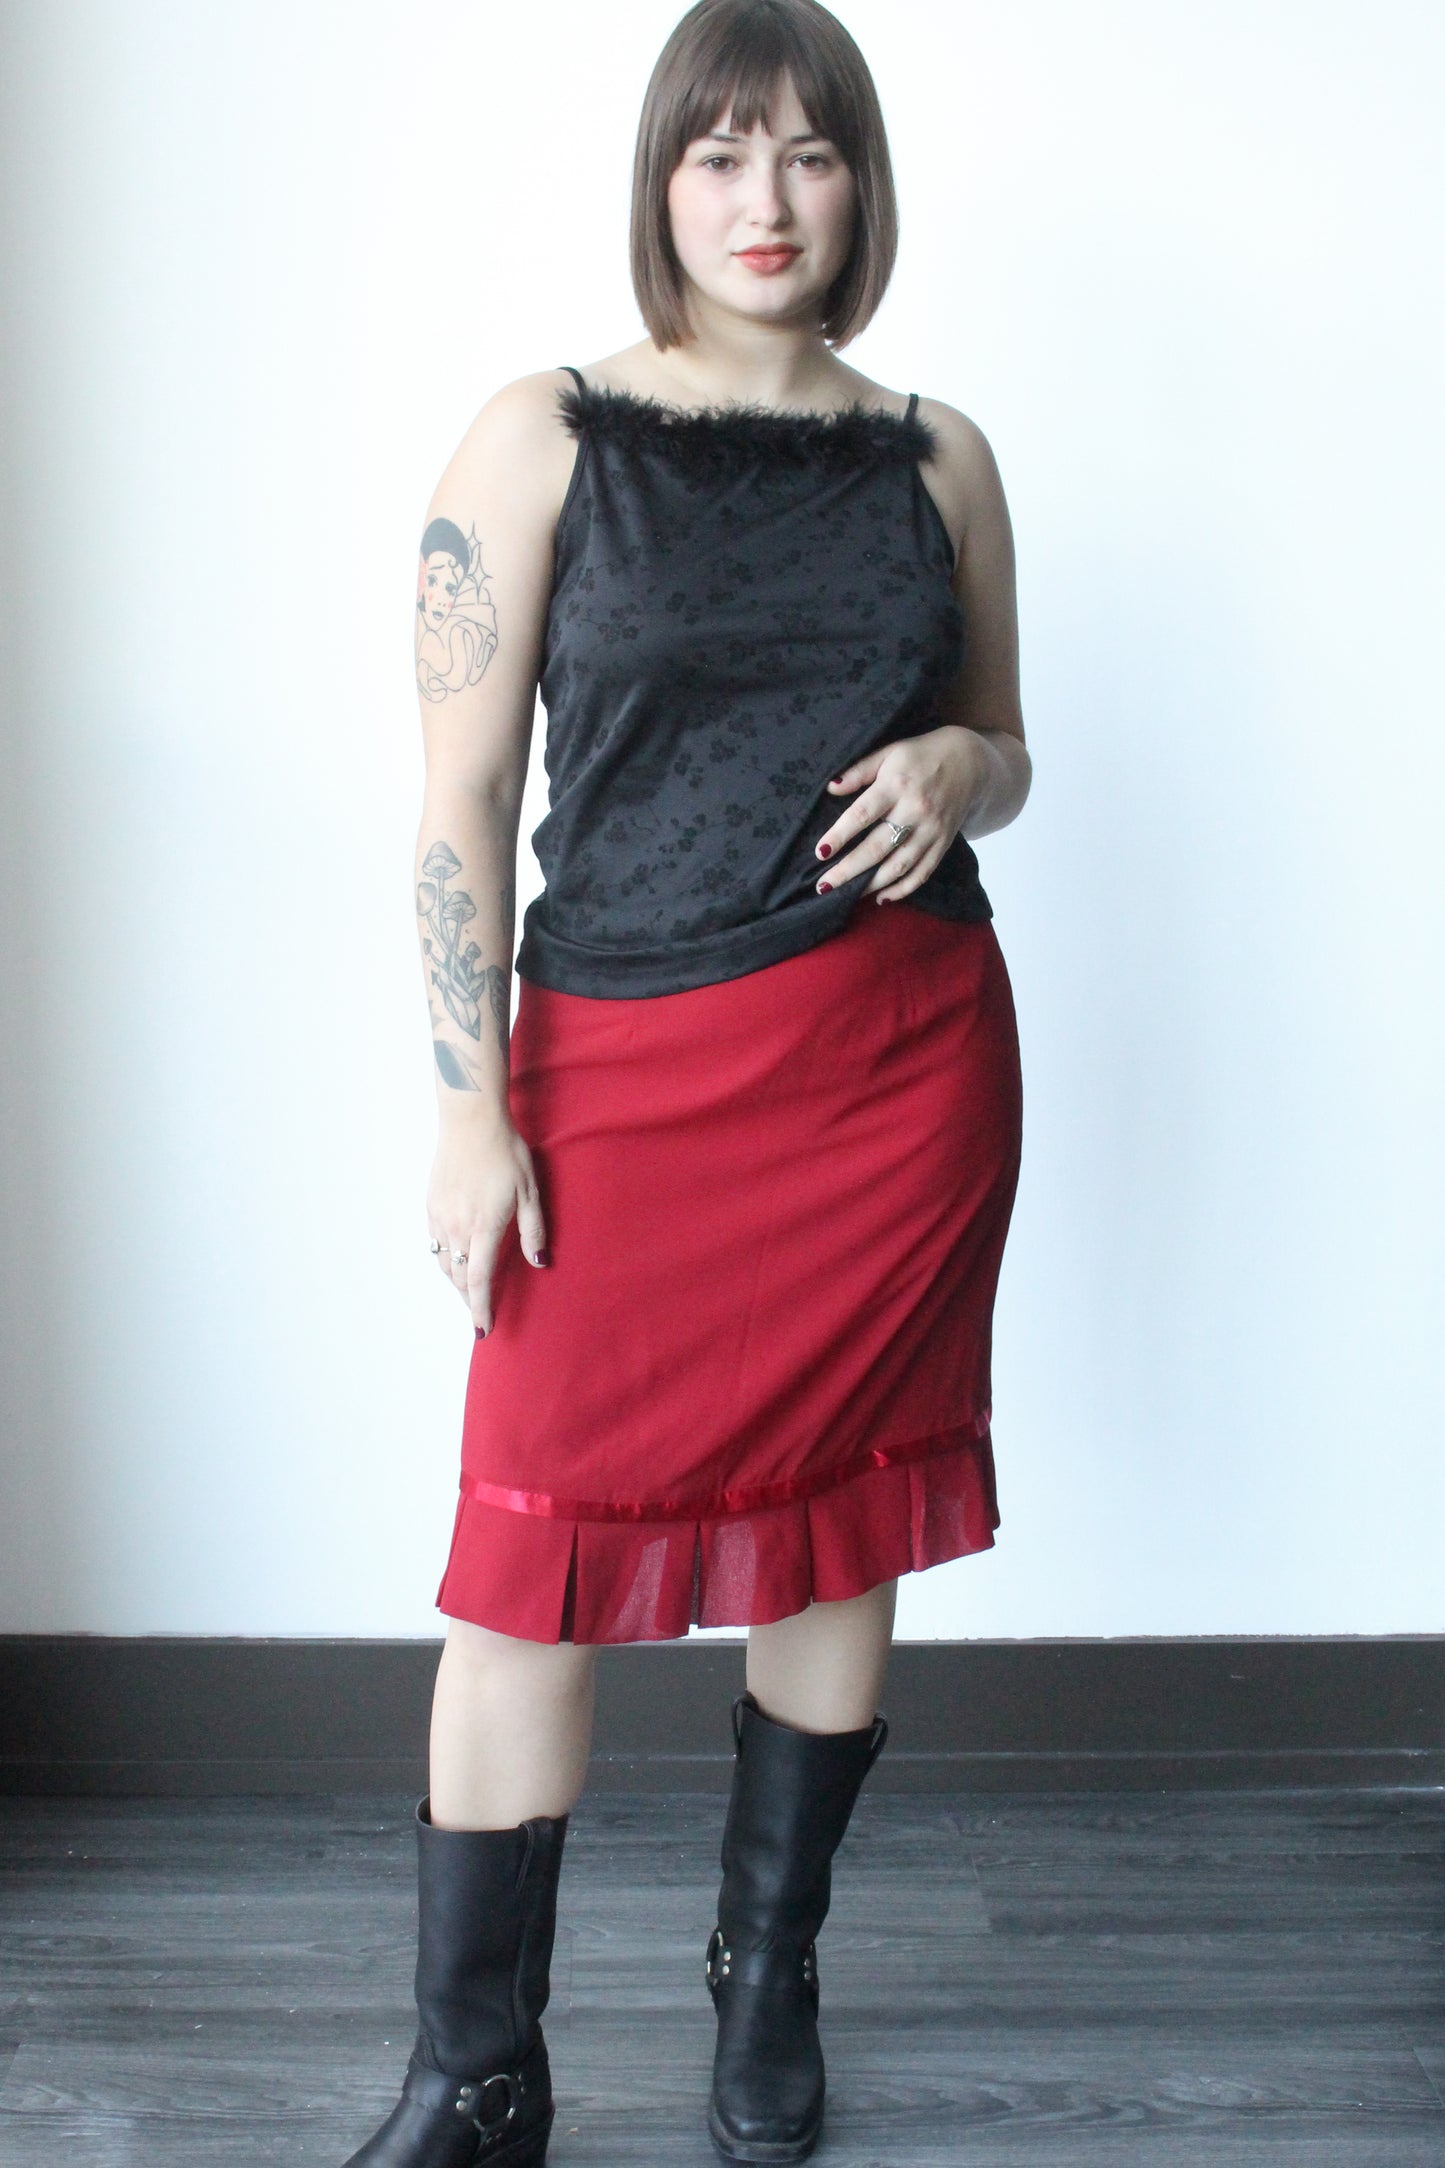 red ruffle midi skirt - SZ M/L